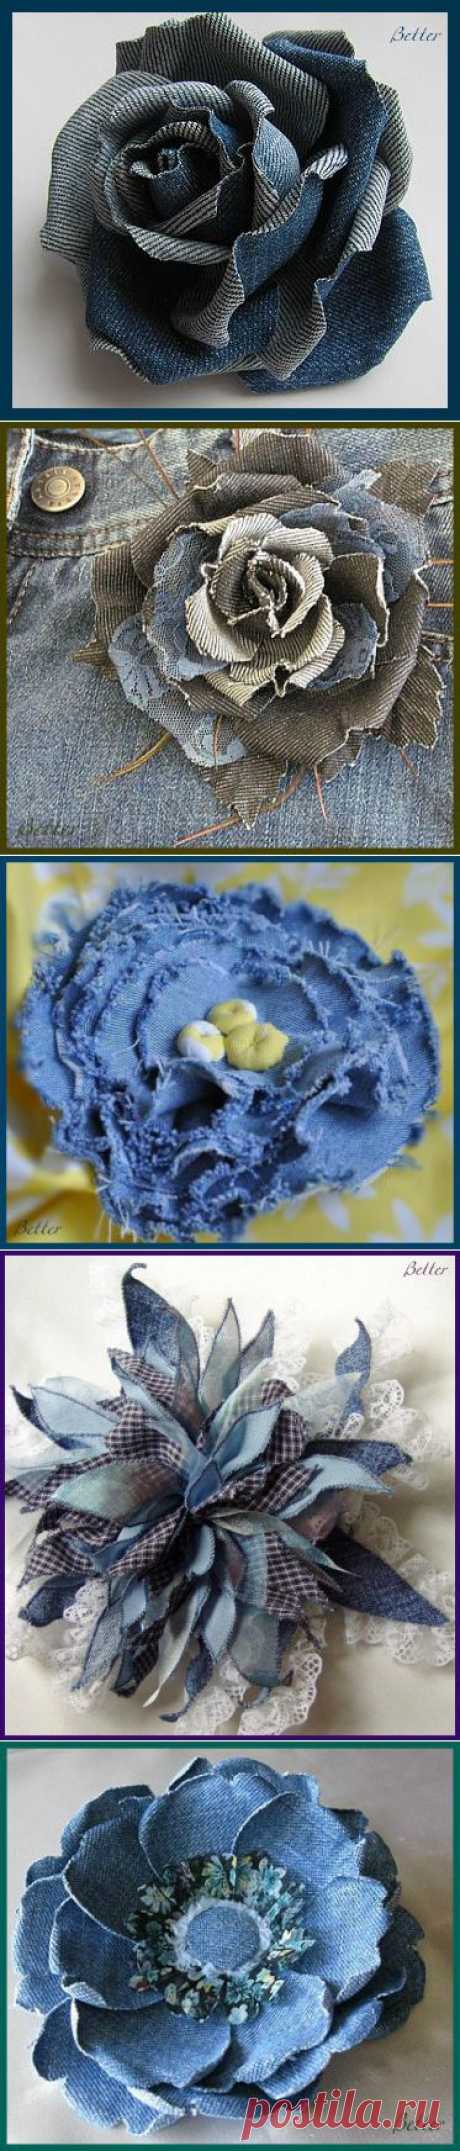 Текстильные фантазии и не только: Розы из джинсовой ткани